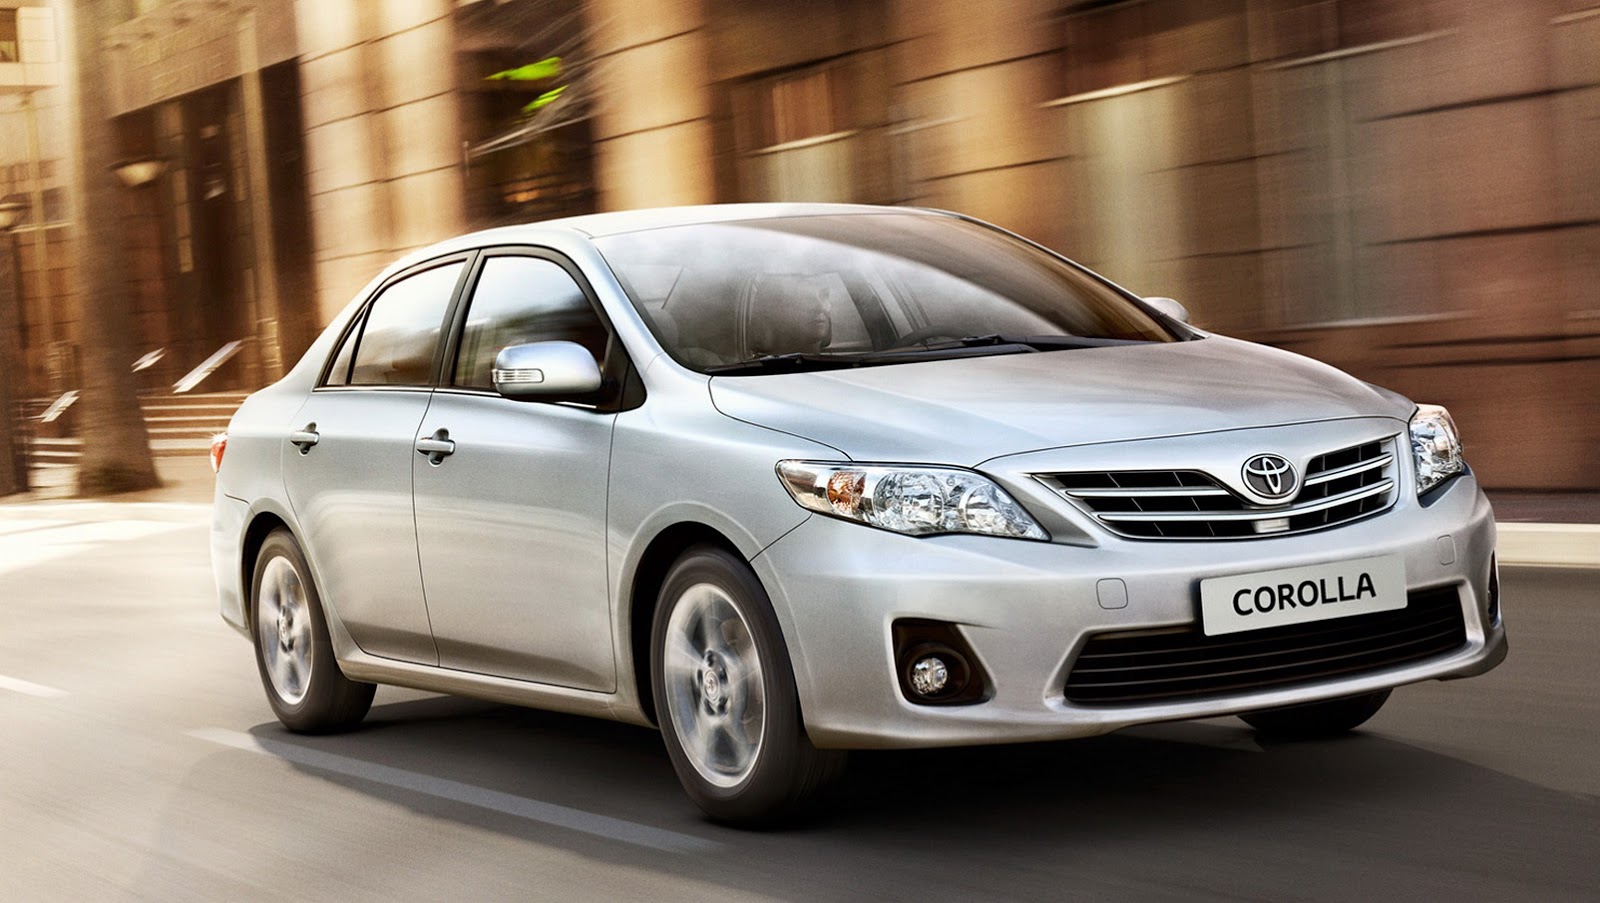 Дилеры Toyota начали принимать заказы на обновленную Corolla. Цена — от 949 тысяч рублей